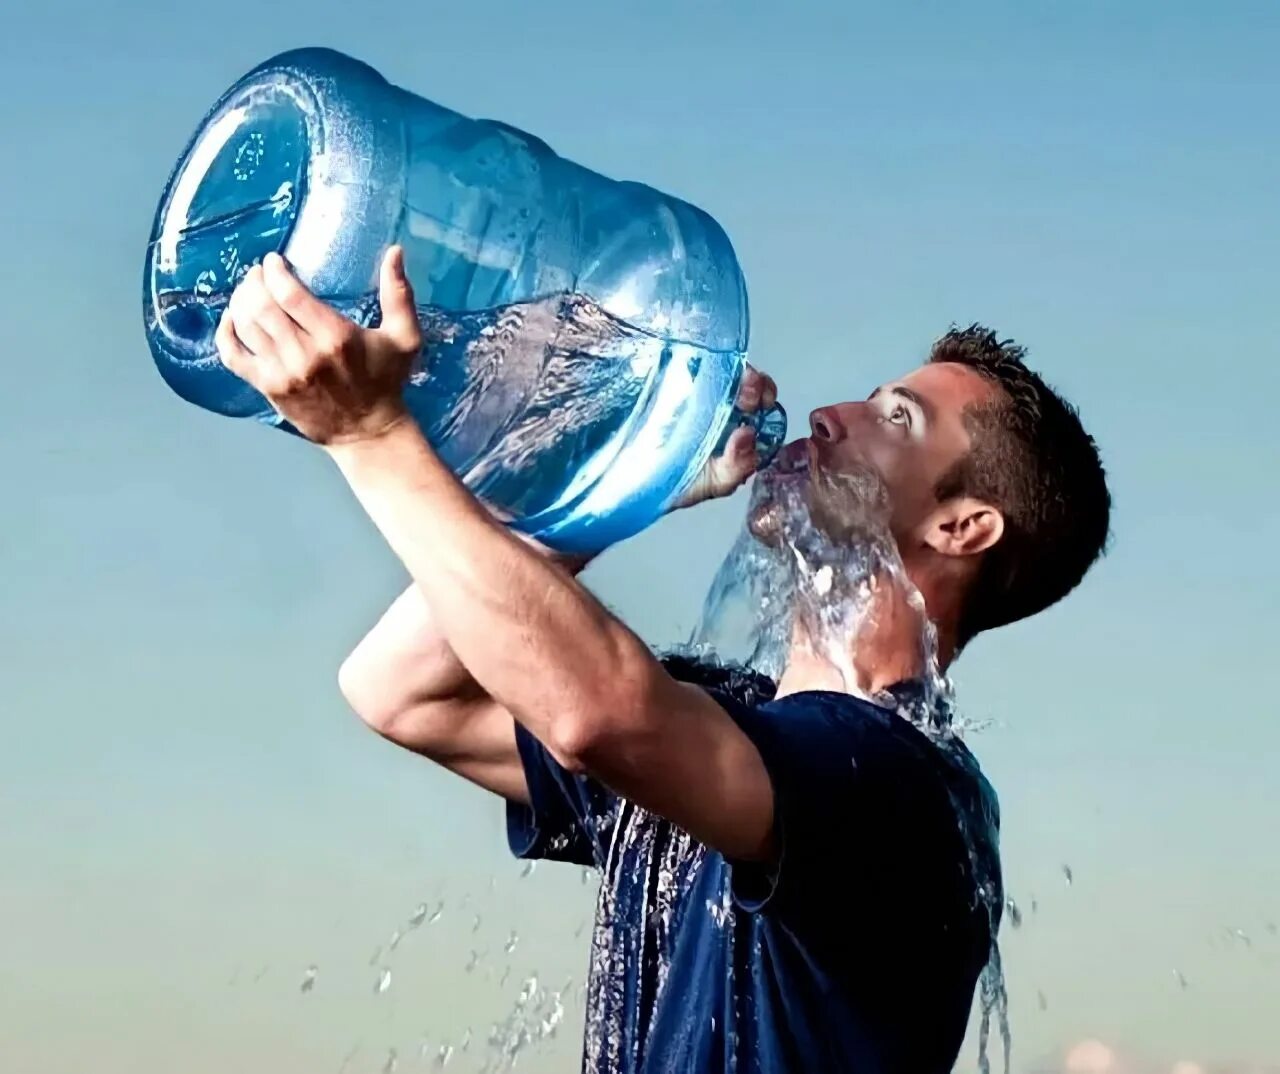 Пить хочу уральские. Пить воду. Огромная бутылка воды. Питье воды. Человек с бутылкой воды.